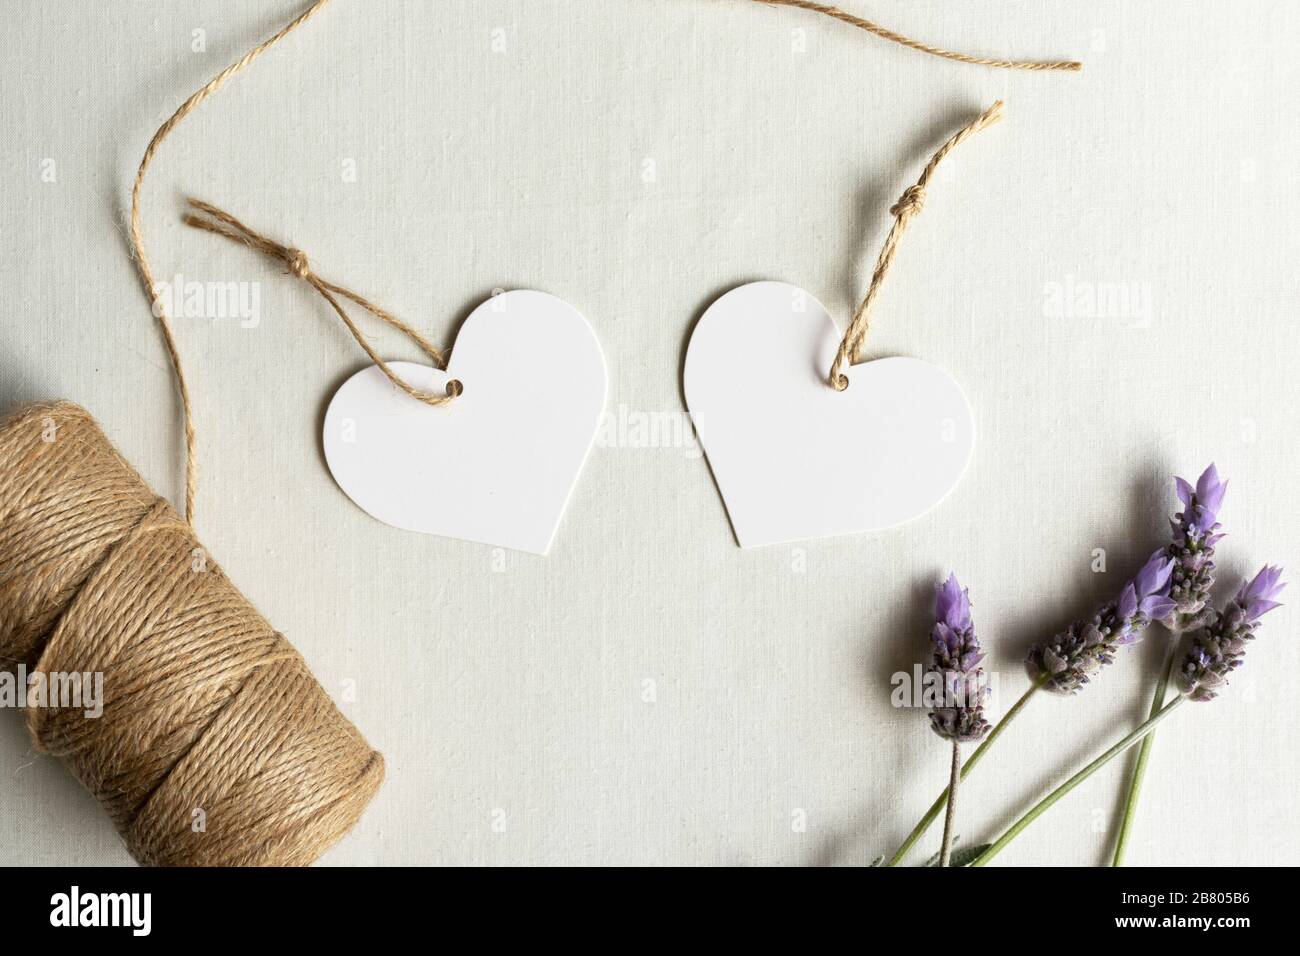 Herzförmige Geschenkanhänger - zwei weiße Herzanhänger mit Lavendel und Garn zum Geburtstag der Hochzeit Stockfoto